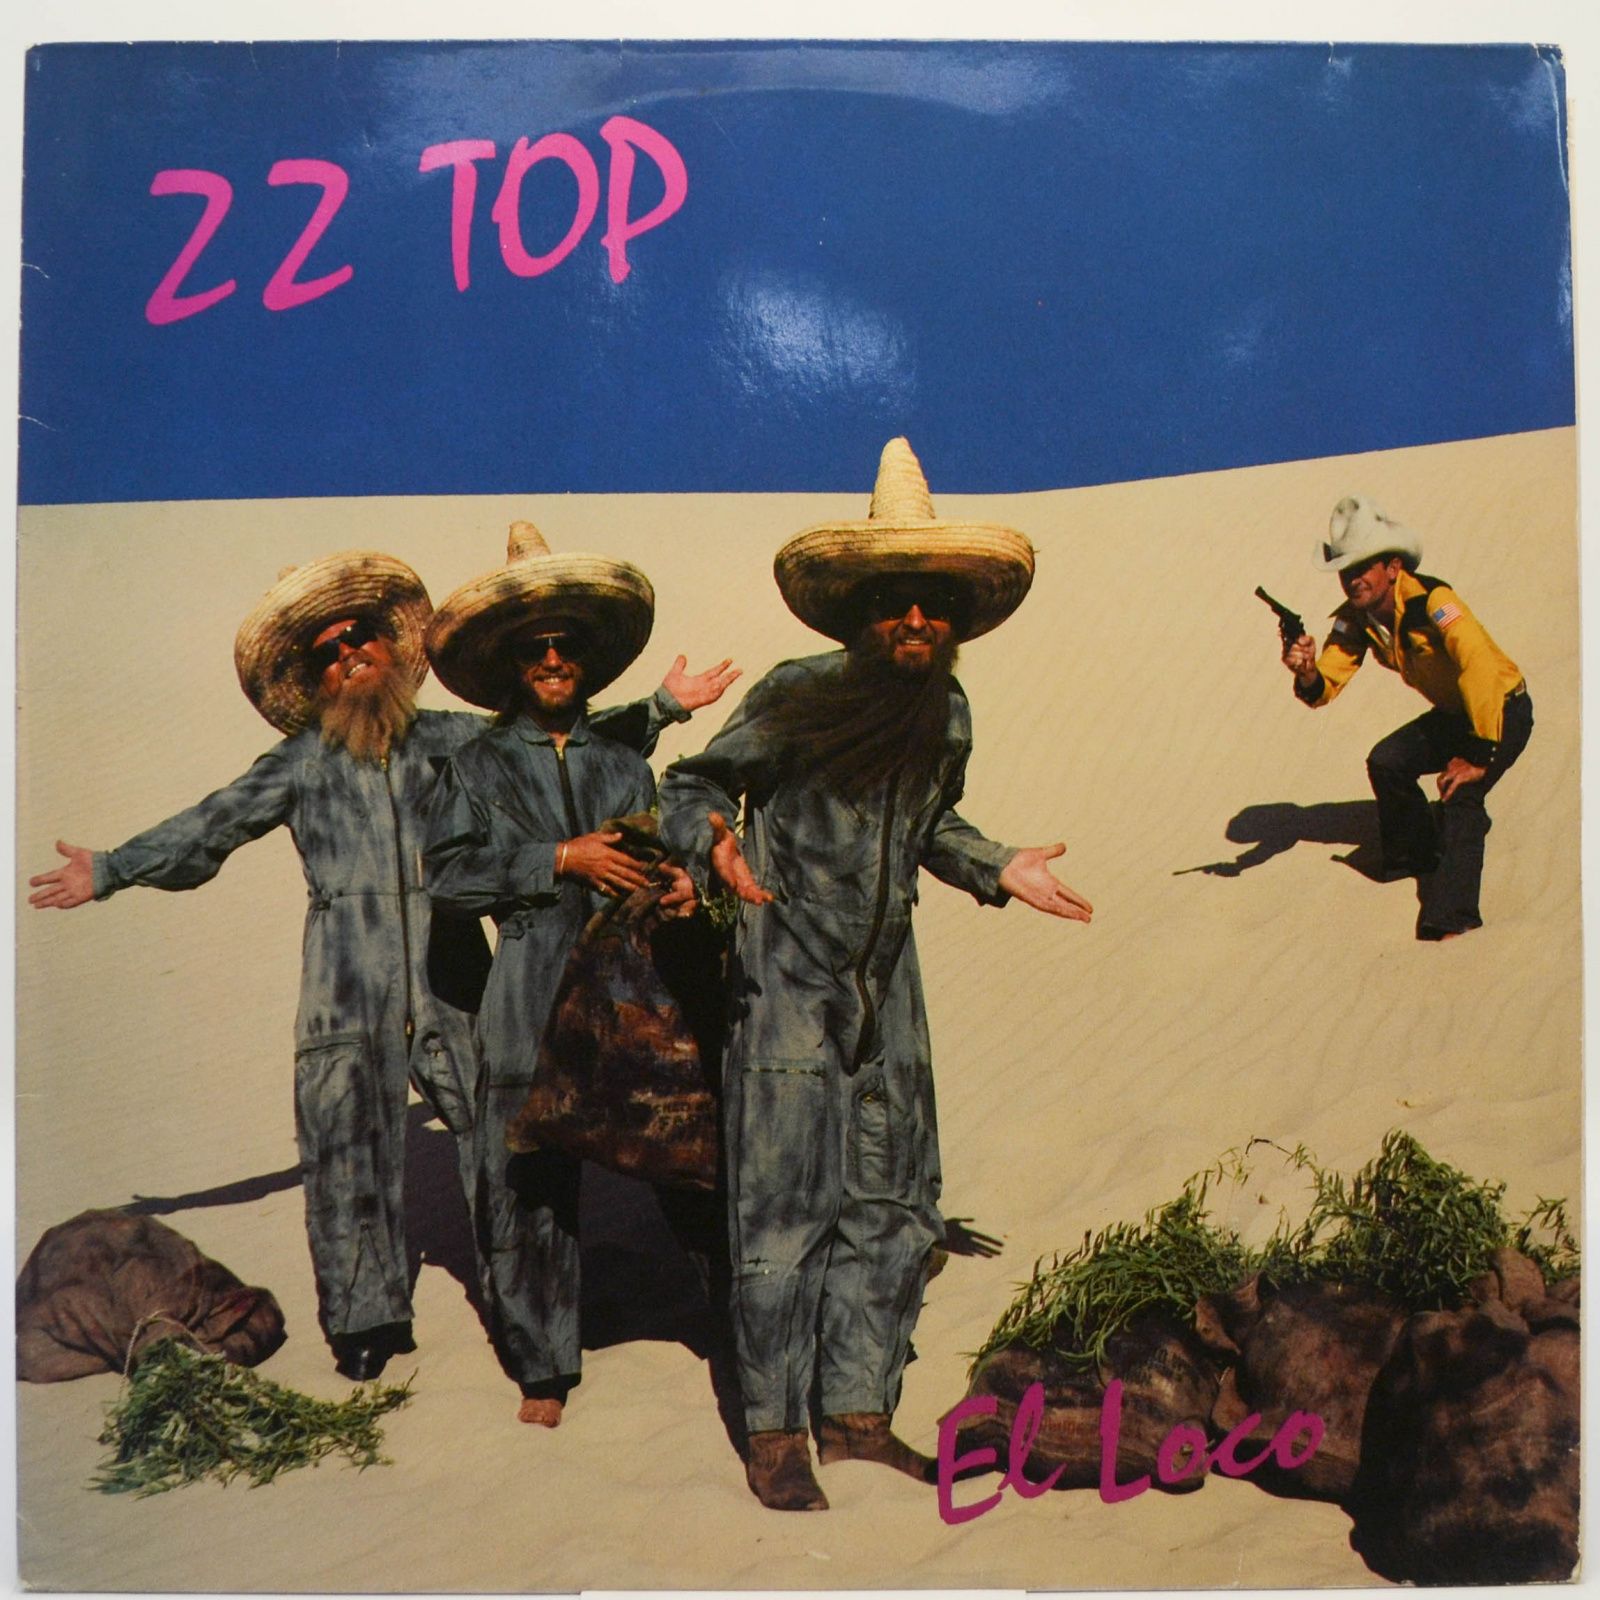 ZZ Top — El Loco, 1981